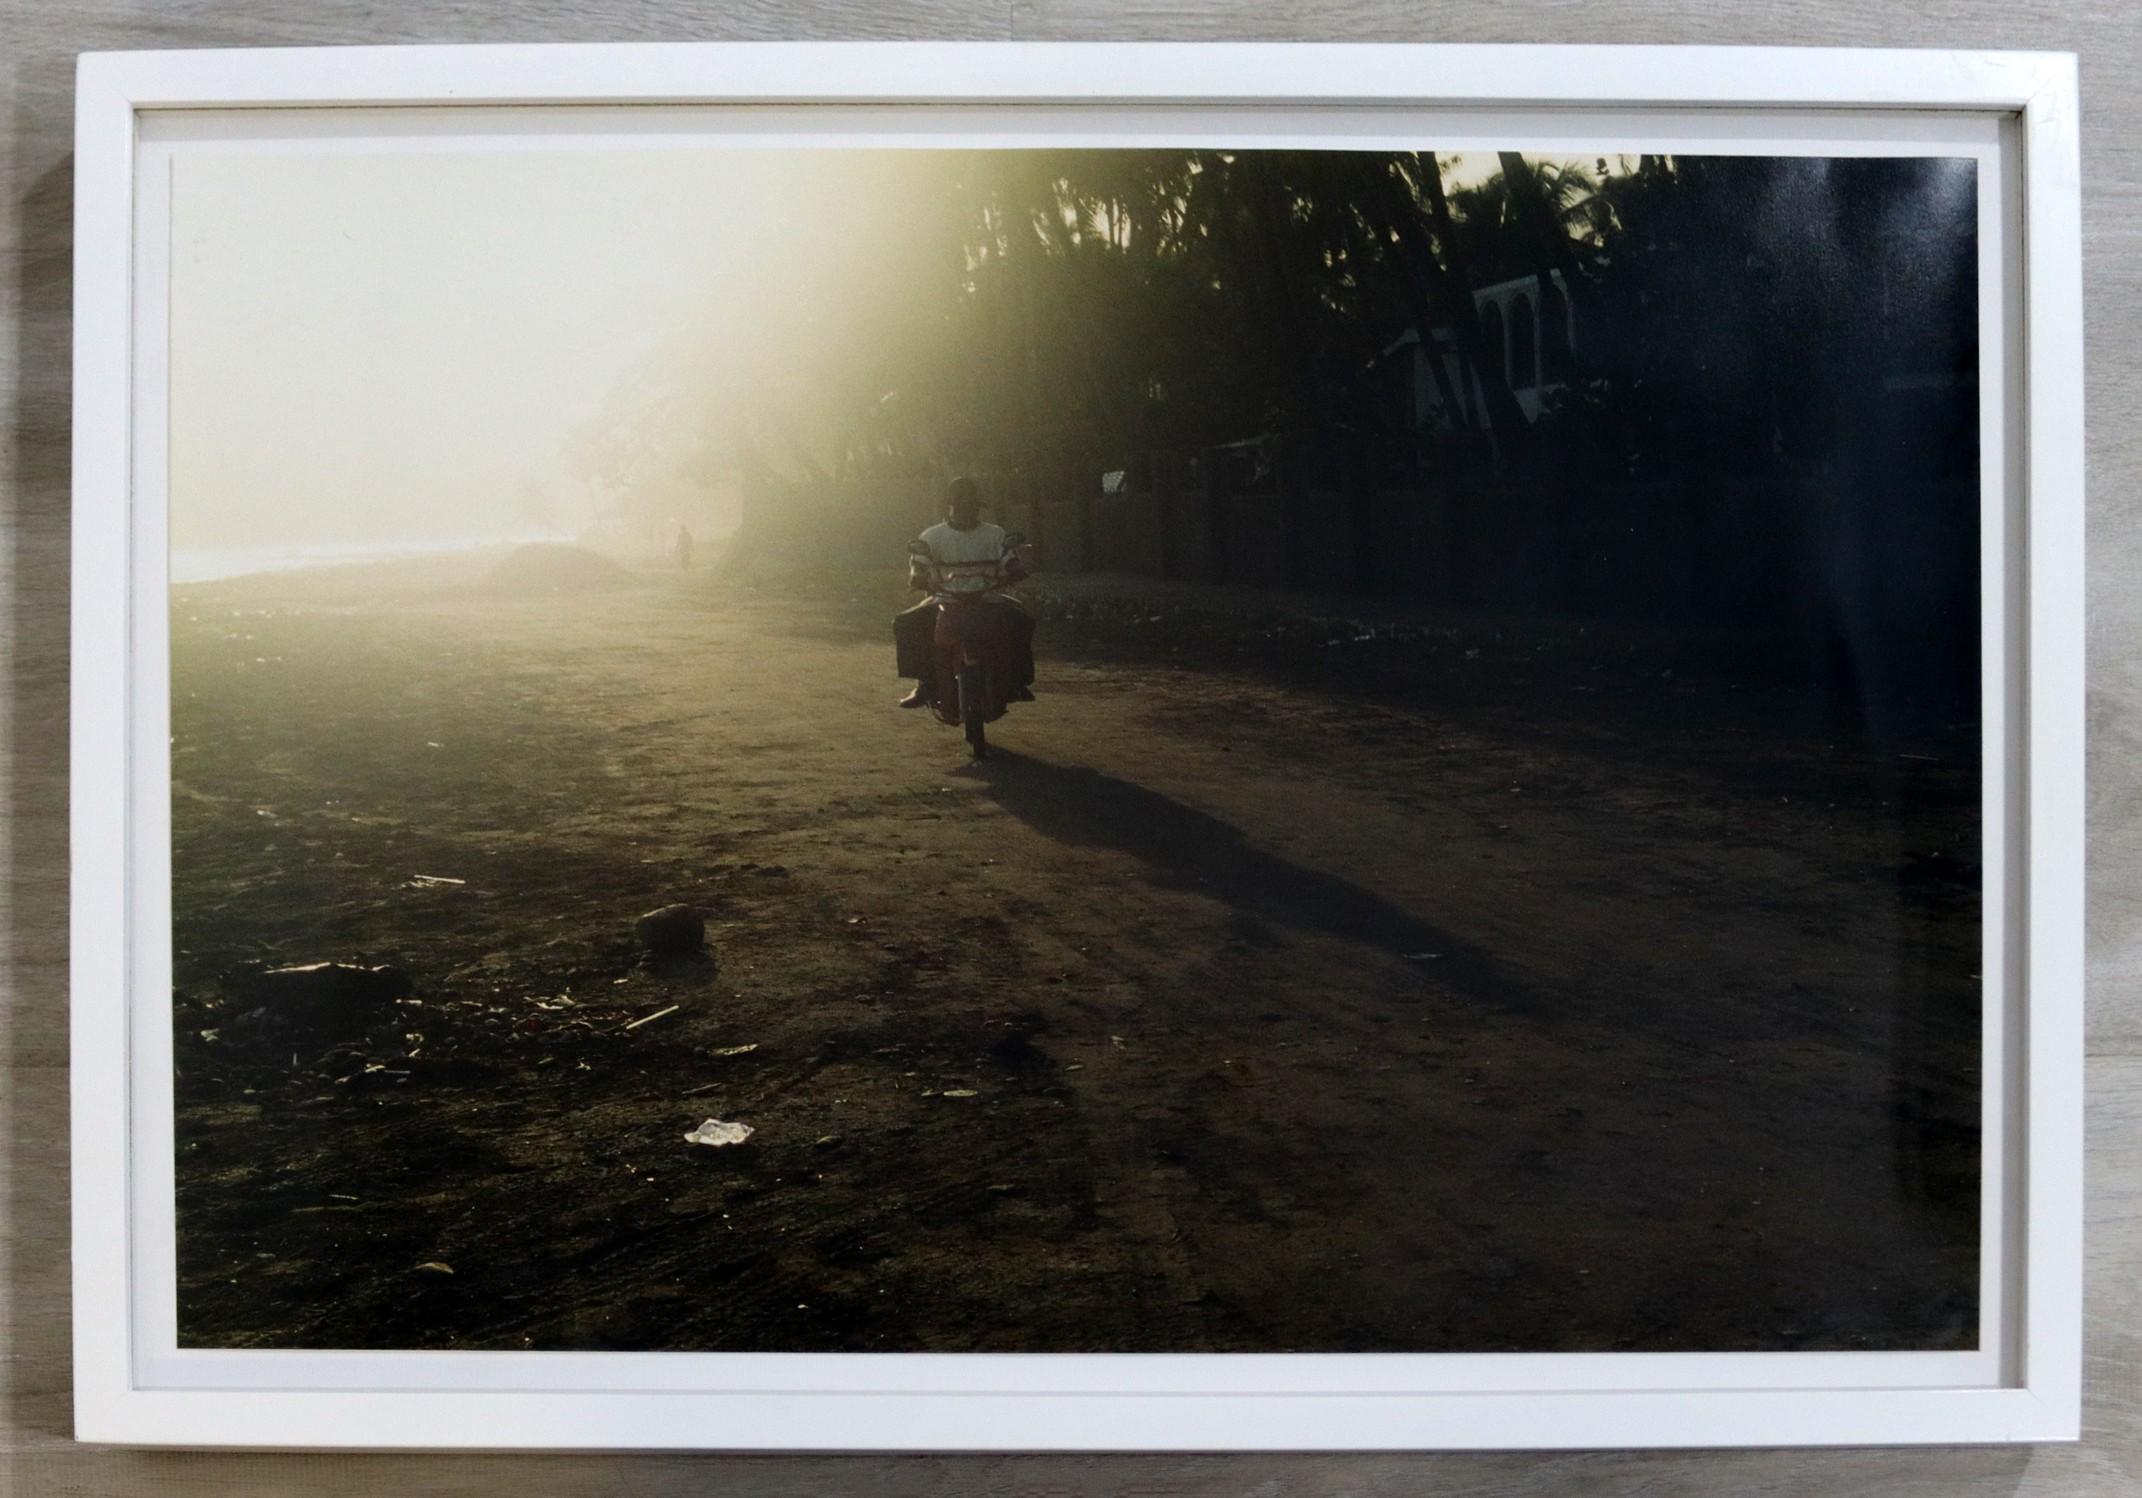 Nous vous proposons une photographie contemporaine, riche et vivante, représentant un Haïtien en scooter, réalisée par la photographe primée Chantel James. Dimensions : 16h x 22w (encadré). En parfait état. 


Chantal James est connue pour avoir